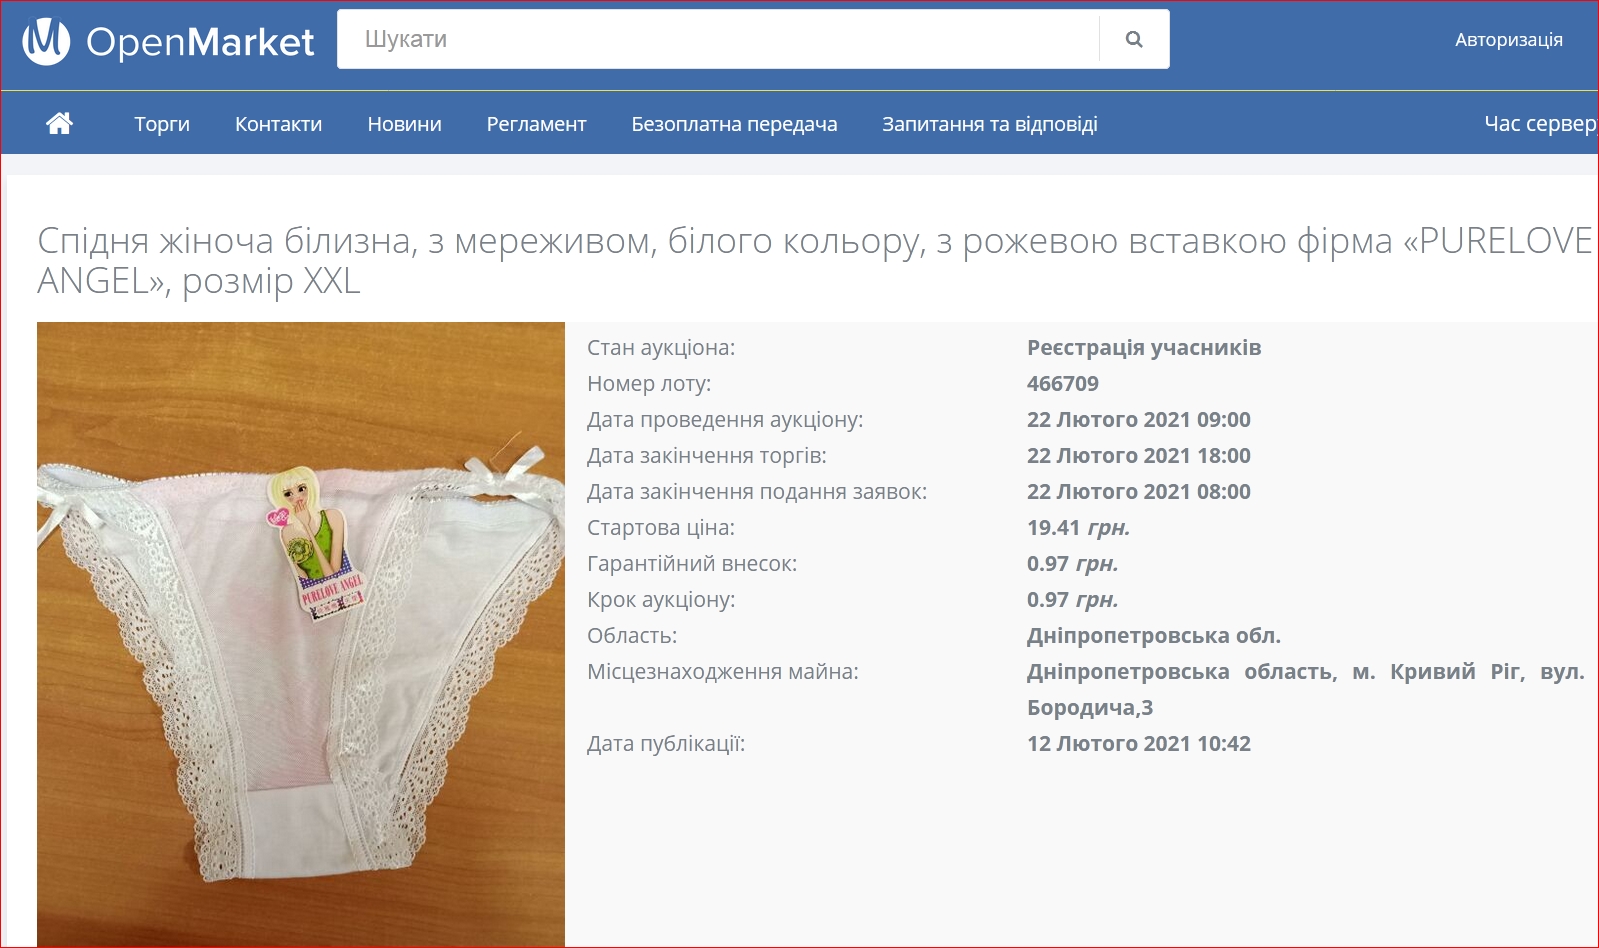 ”Все по 19,41 грн”: Минюст продает на аукционе арестованы женские трусики - фото 5